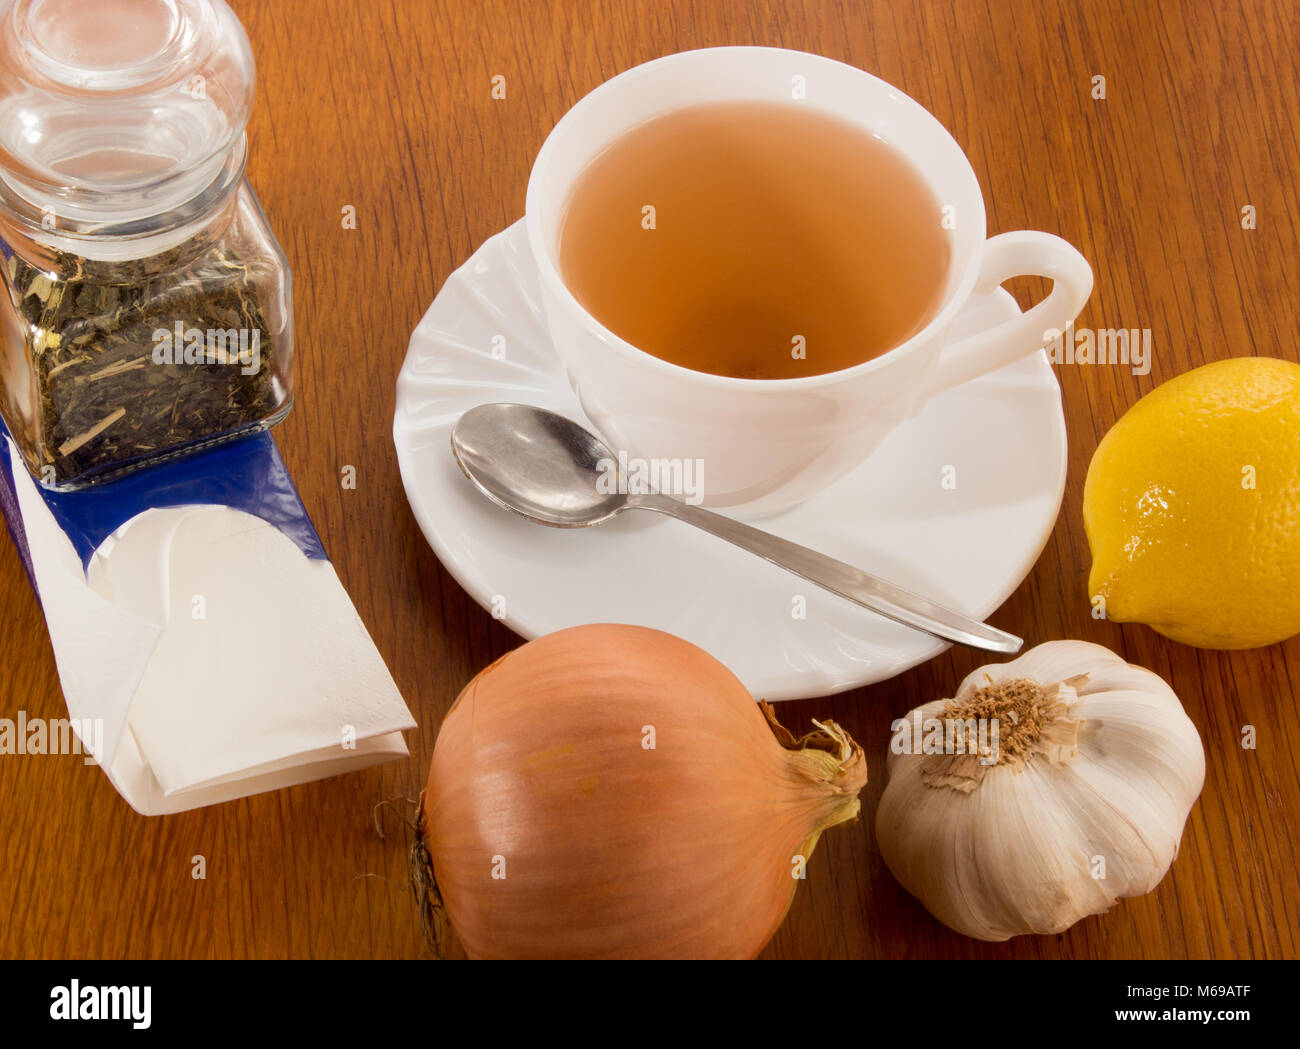 Una taza de té con platillo y cuchara, limón, cebolla, ajo, una dosis de cristal con té, pañuelos de papel. Todo en contra de pescar un resfriado en la madera de Foto de stock